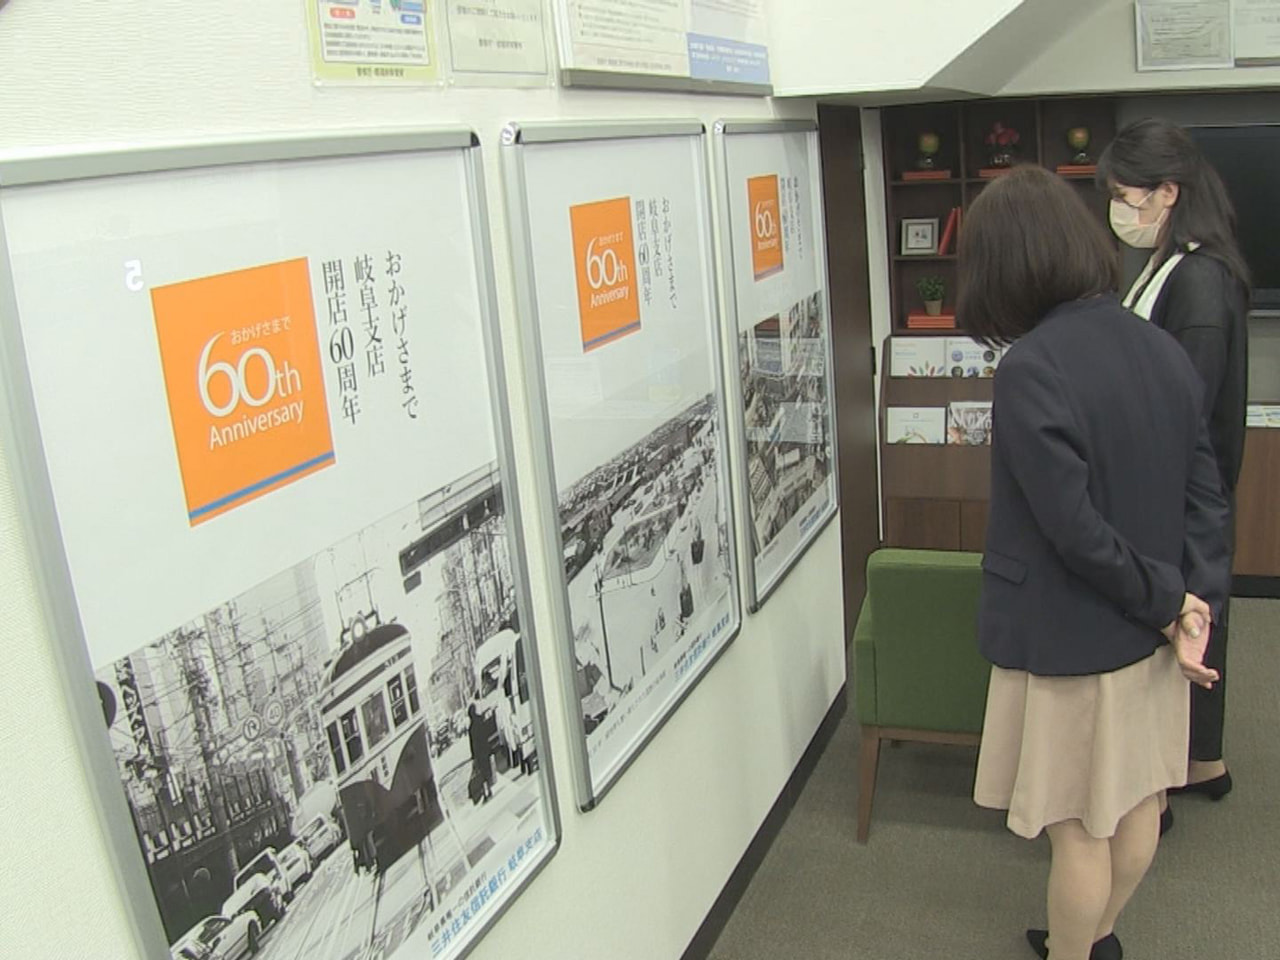 三井住友信託銀行岐阜支店の開店６０周年を記念したパネル展が開かれています。 岐阜...